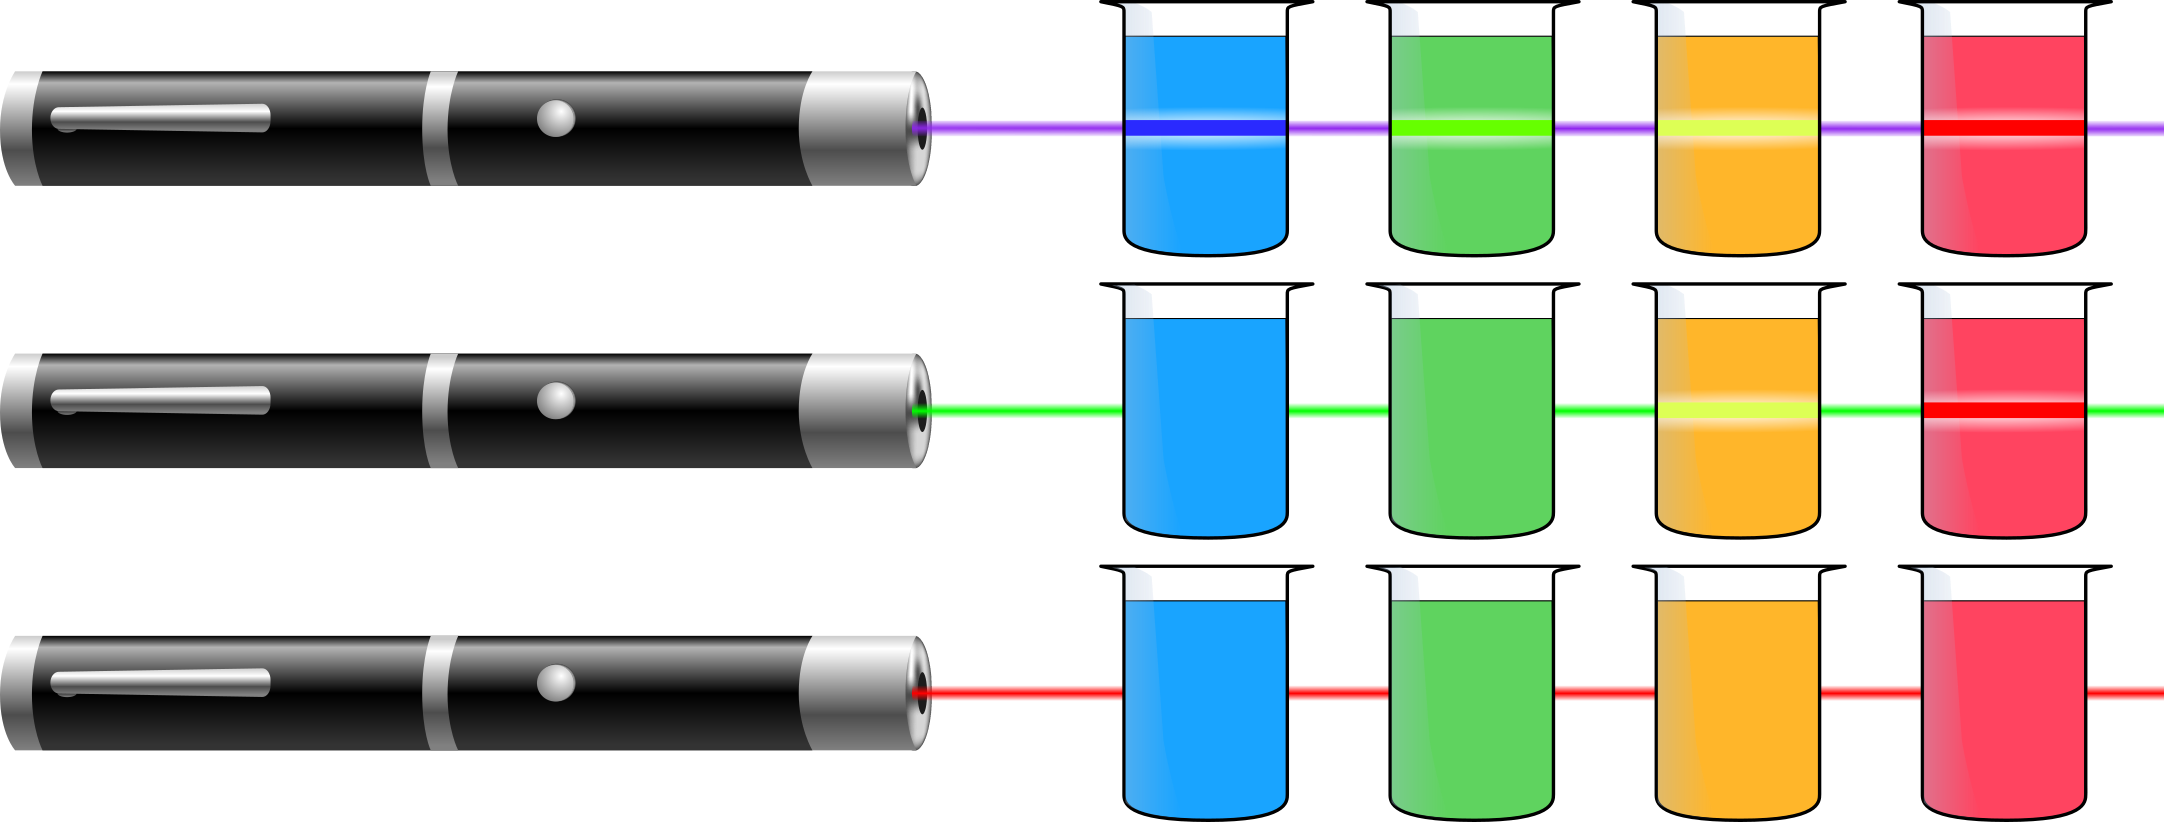 Beobachtete Fluoreszenz verschiedenfarbig fluoreszierender Lösungen nach Anregung mit Laserstrahlen ver-schiedener Wellenlängen. 